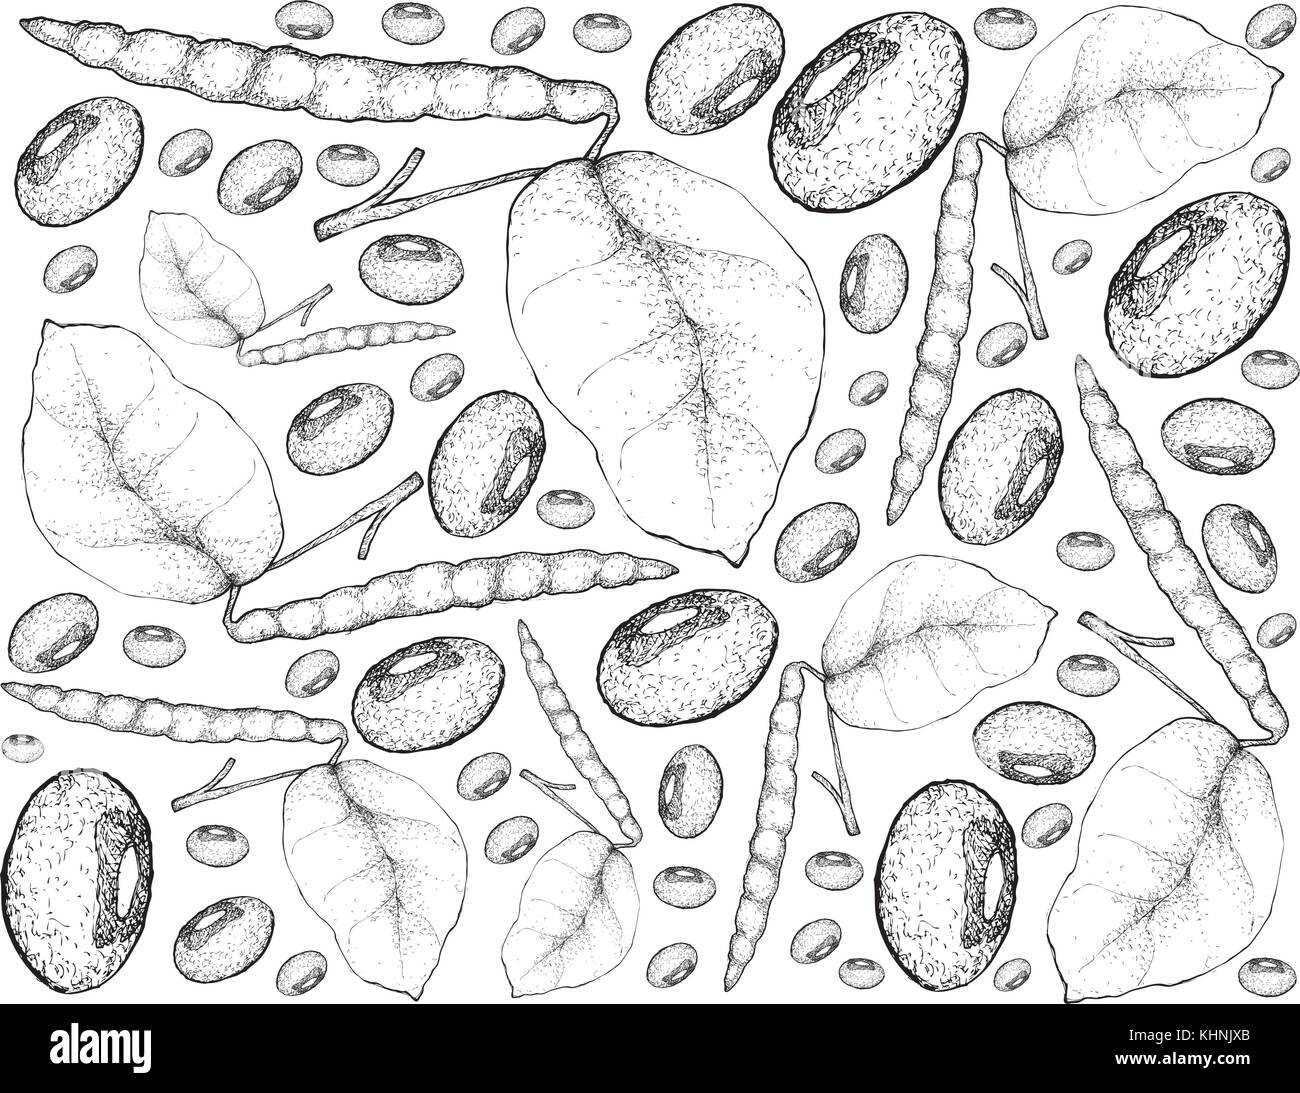 Gemüse- und Kräutergarten, Illustration Hintergrund Muster von Hand gezeichnete Skizze Schwarzes gemusterte Erbsen, eine gute Quelle für Ballaststoffe, Vitamine und Mineralien. Stock Vektor